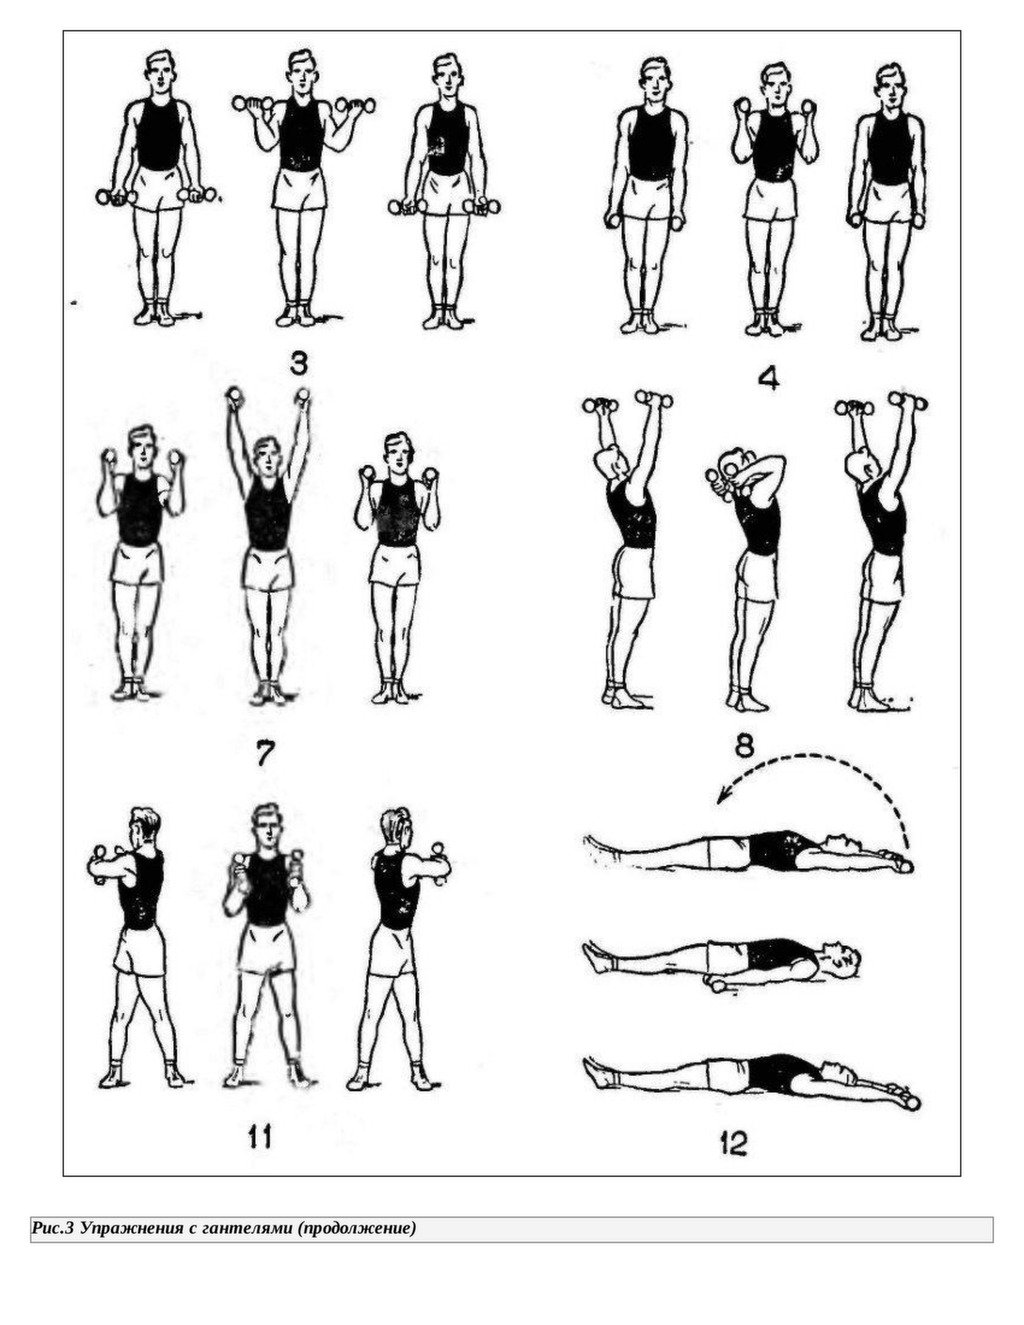 Зарядка с гантелями для женщин. Комплекс упражнений с гантельками. Комплекс упражнений с гантелями (10-12 упражнений). Комплекс упражнений для рук с гантелями. Упражнения с гантельками для женщин.